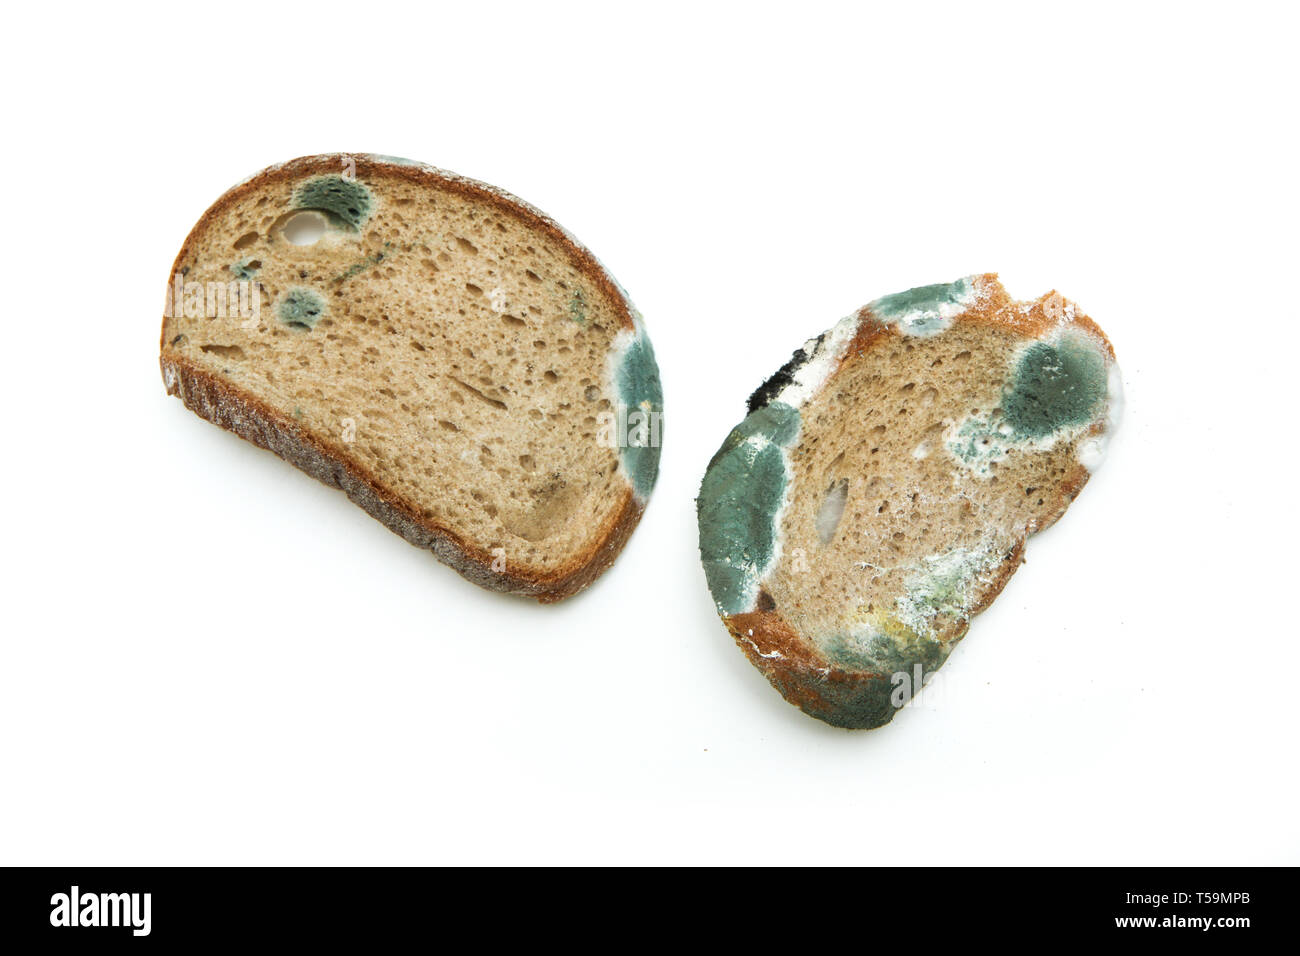 Das Bild eines verschimmeltes Brot. Morsch und ungenießbar. Auf weissem Hintergrund. Stockfoto